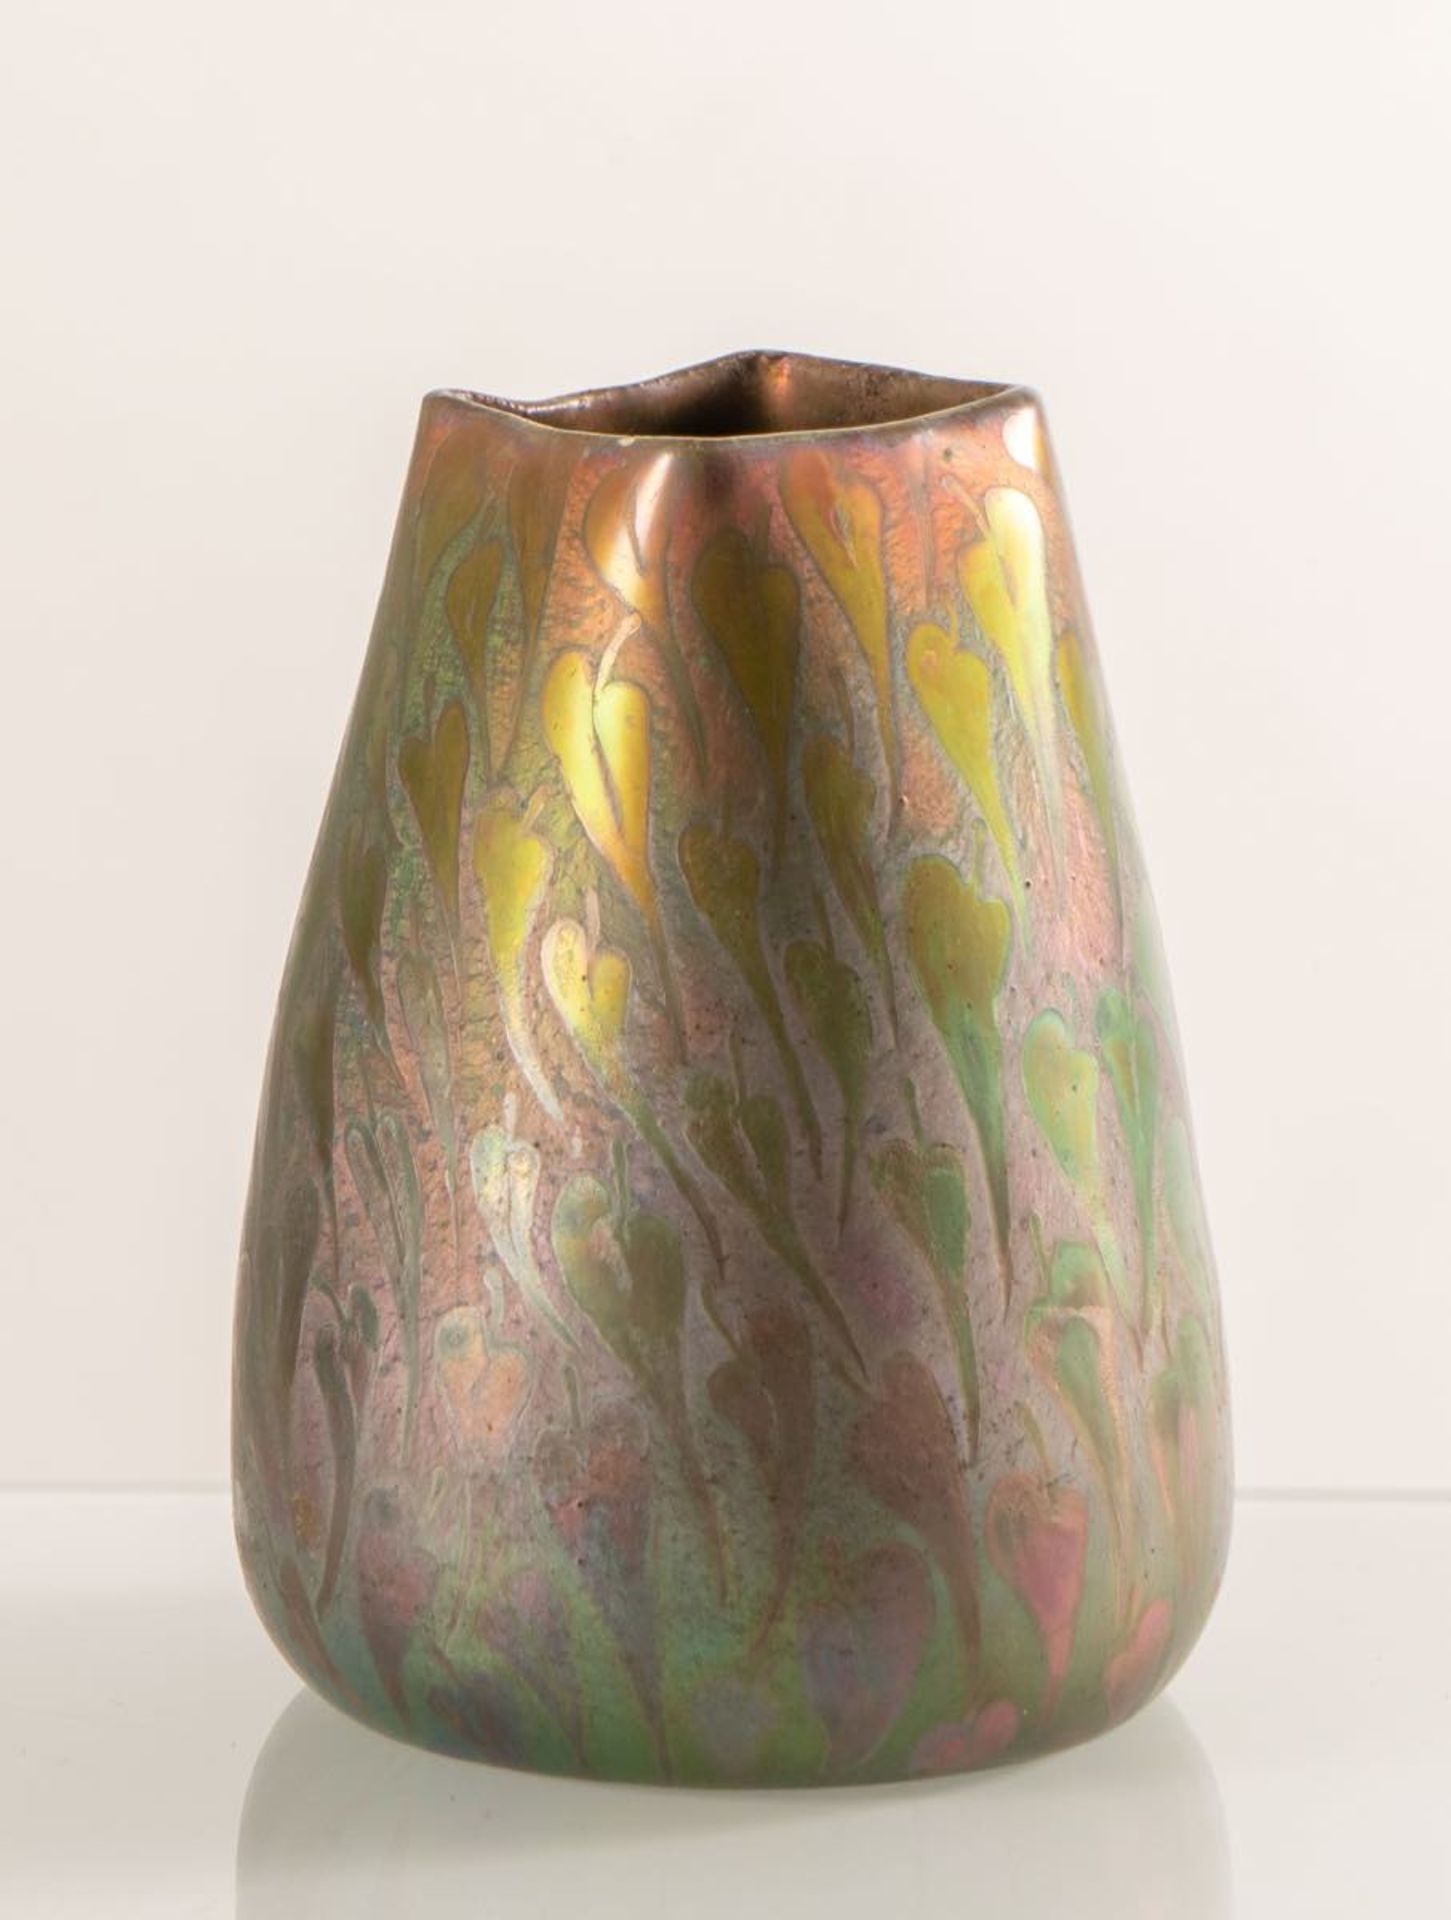 Clément Massier, Piccolo vaso piriforme in ceramica, 1890 - 1910.Imboccatura quadrata, superficie - Bild 2 aus 3